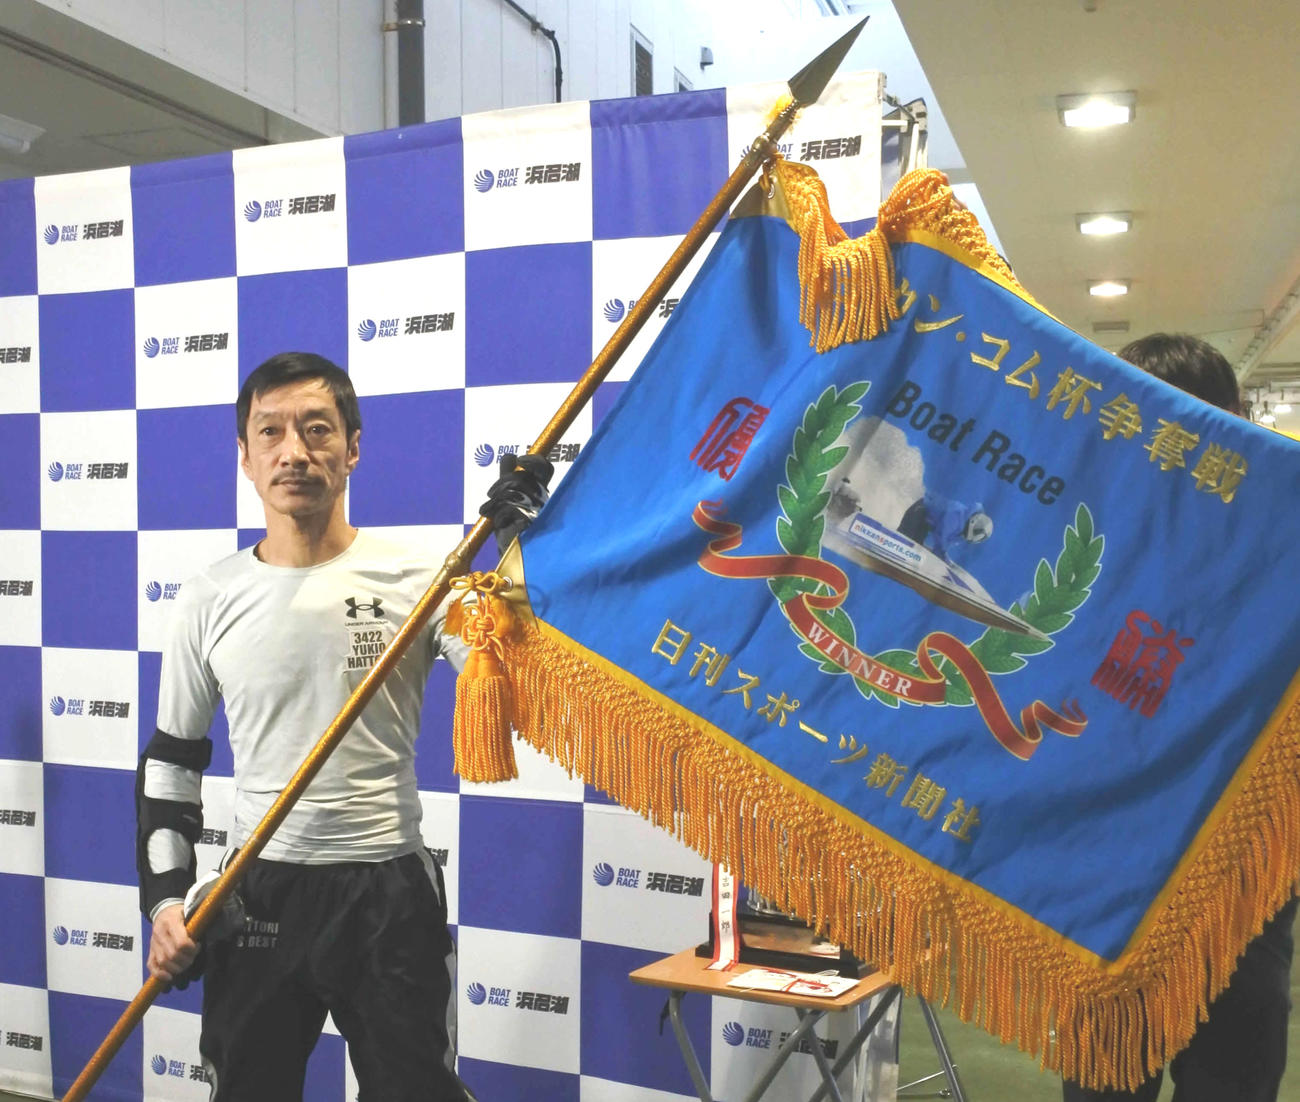 ニッカン・コム杯の優勝旗を掲げた服部幸男